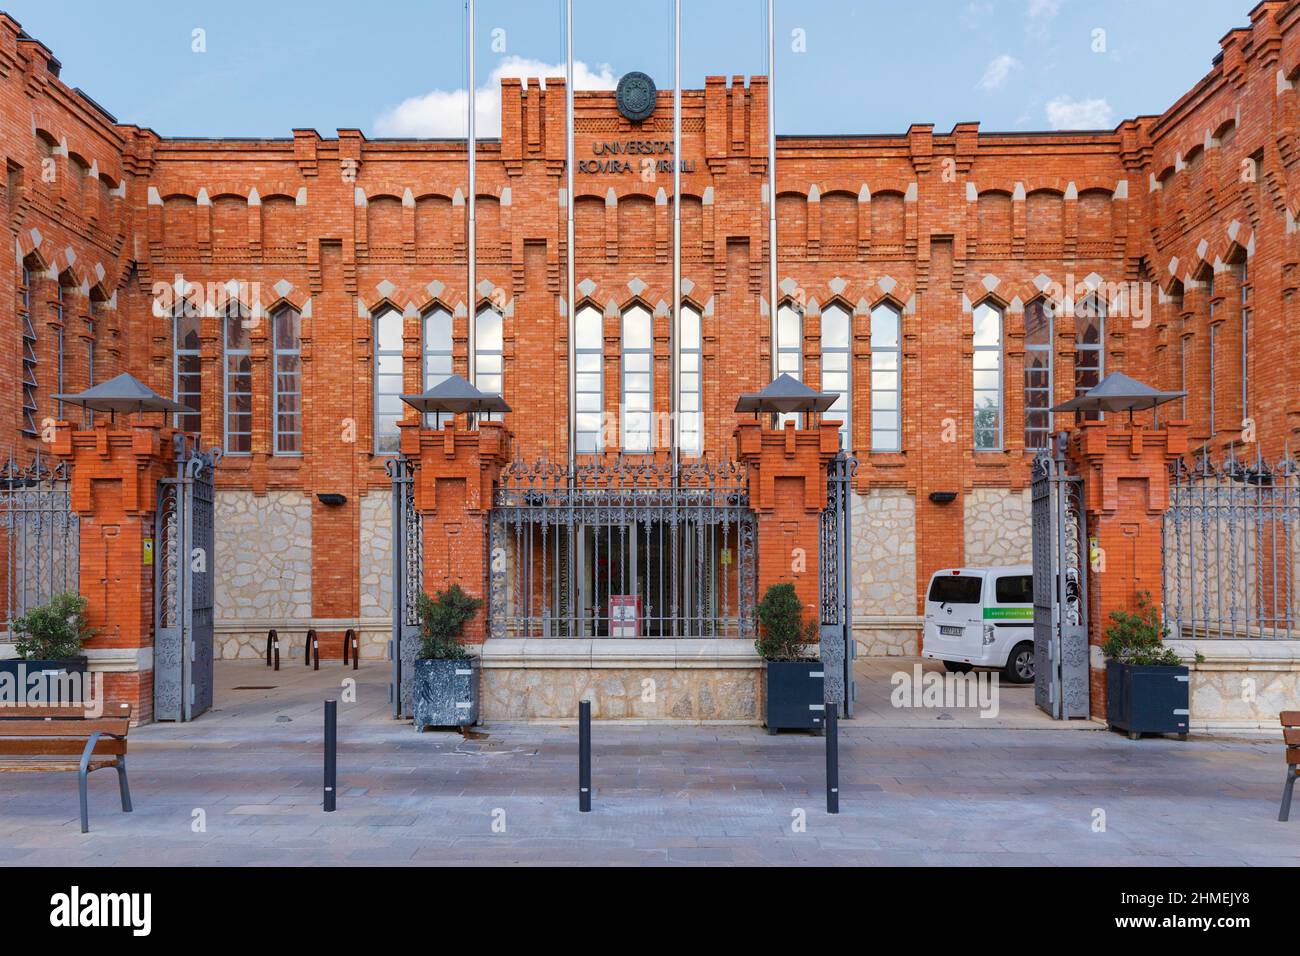 Rovira i Virgili university, Tarragona, Catalonia, Spain Stock Photo